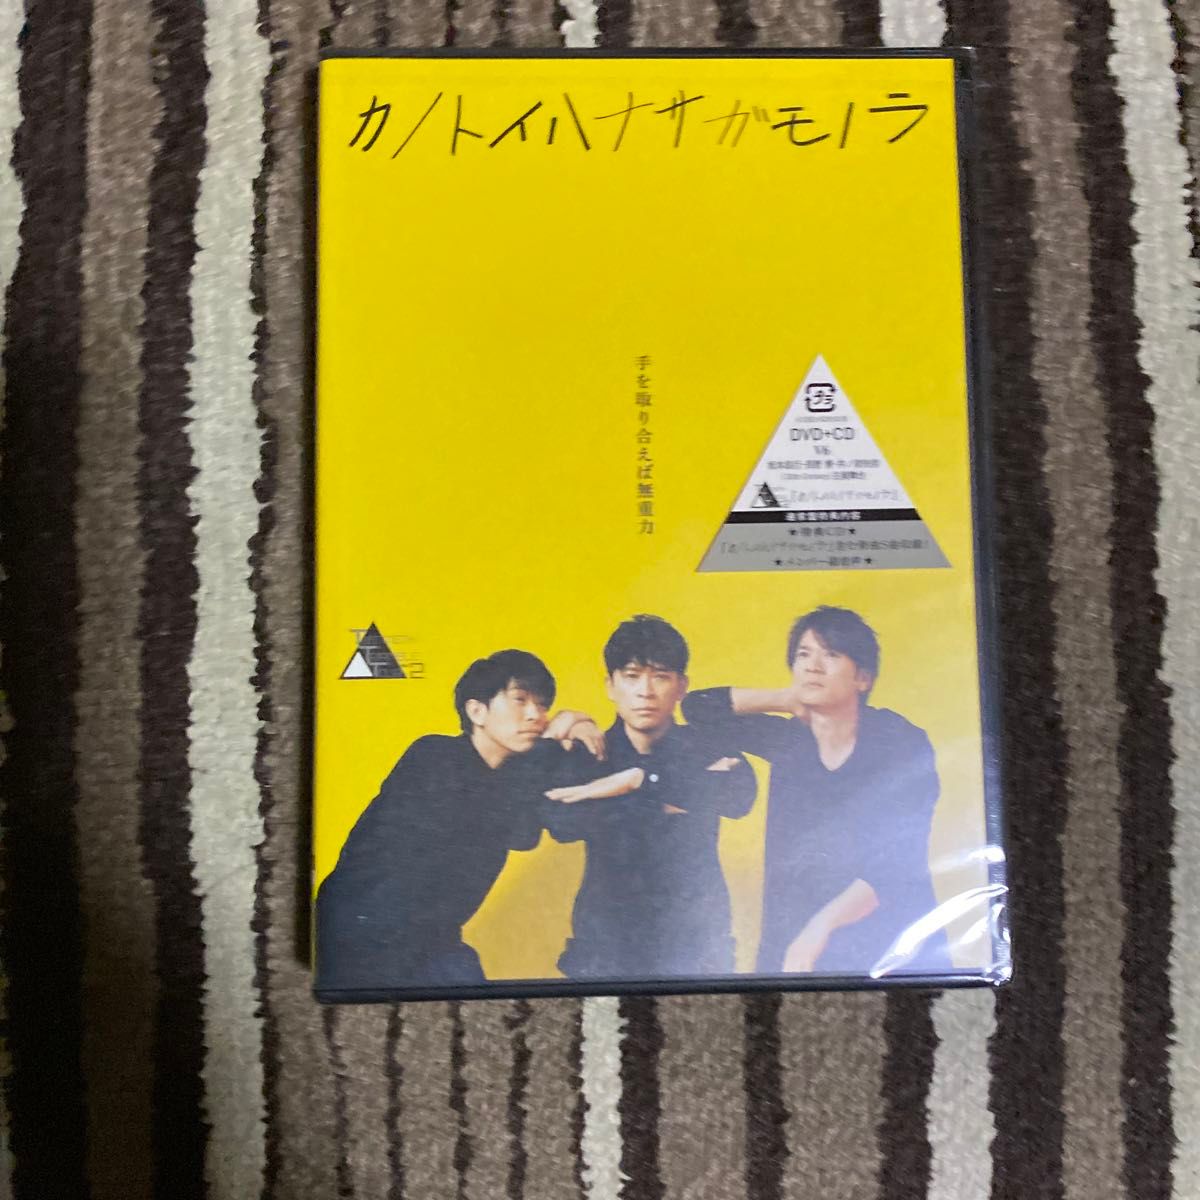 通常盤 20th Century (トニセン) DVD+CD/TWENTIETH TRIANGLE TOUR vol.2 